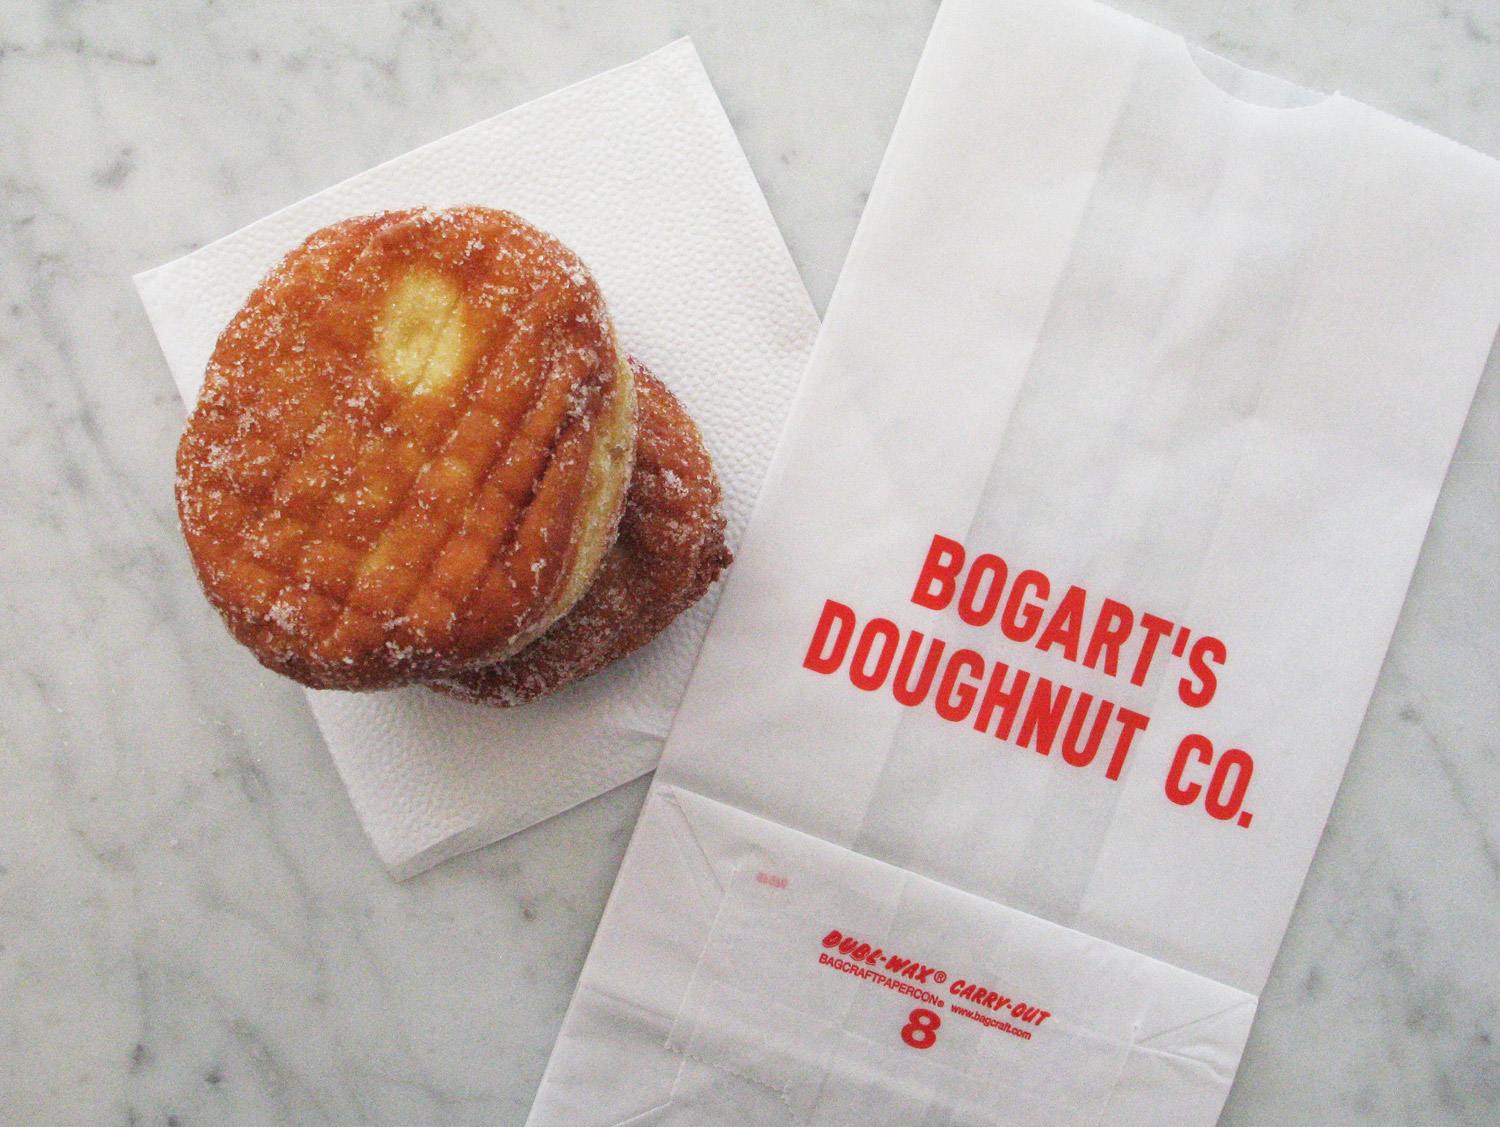 Bogarts-Doughnut-Co-05.jpg